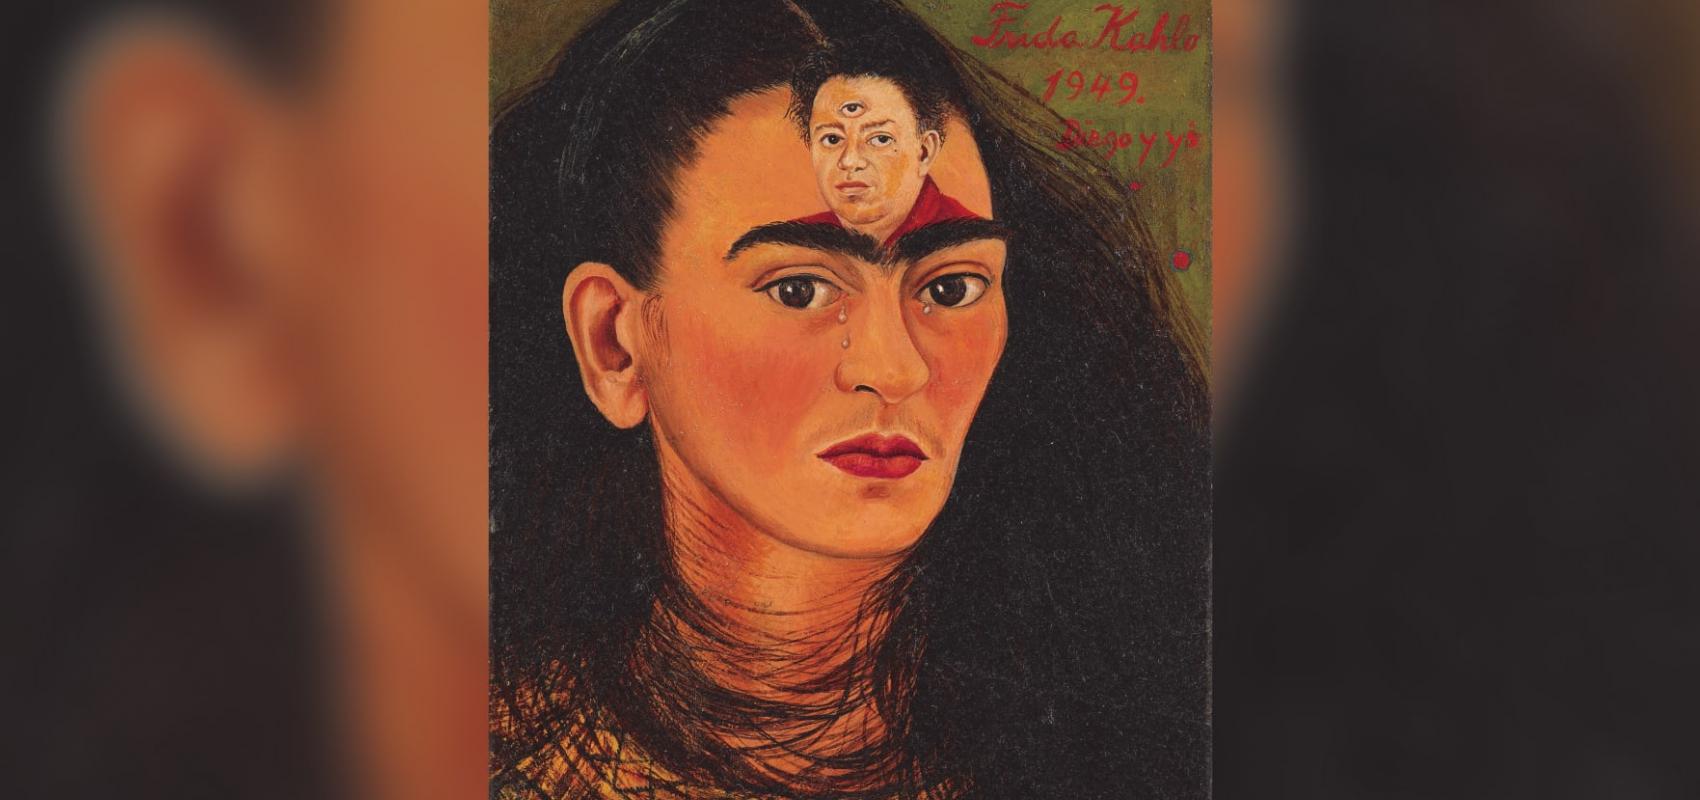 "Diego y yo", obra de Frida Kahlo. 